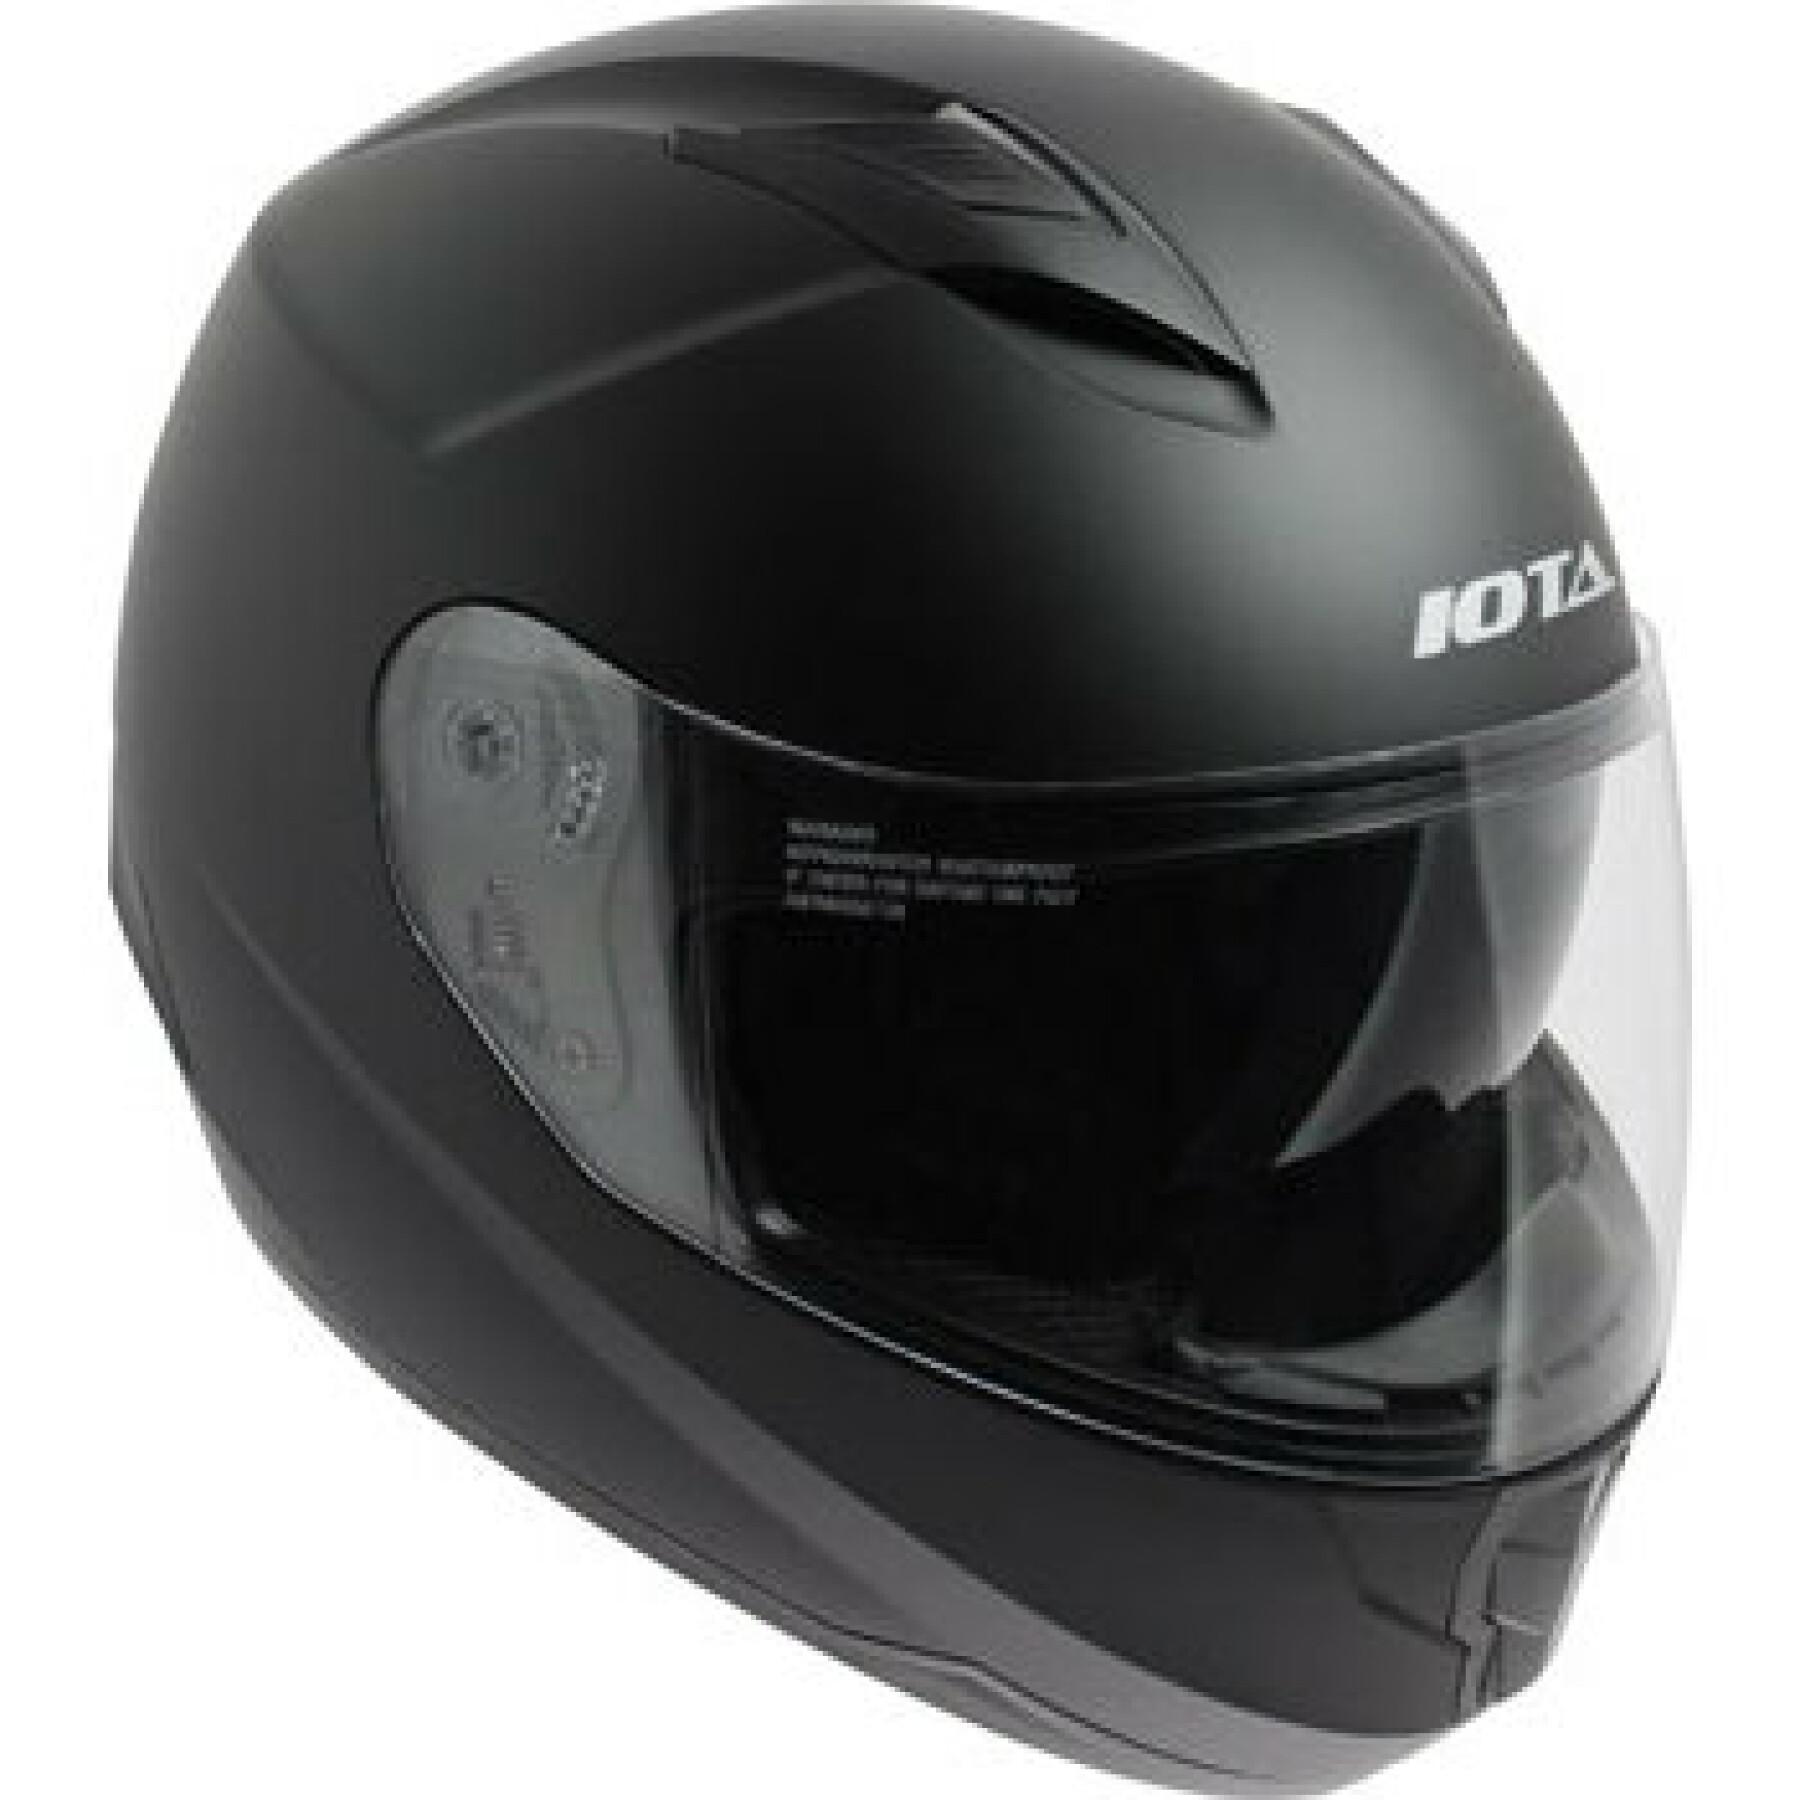 Full face helmet Iota fp10